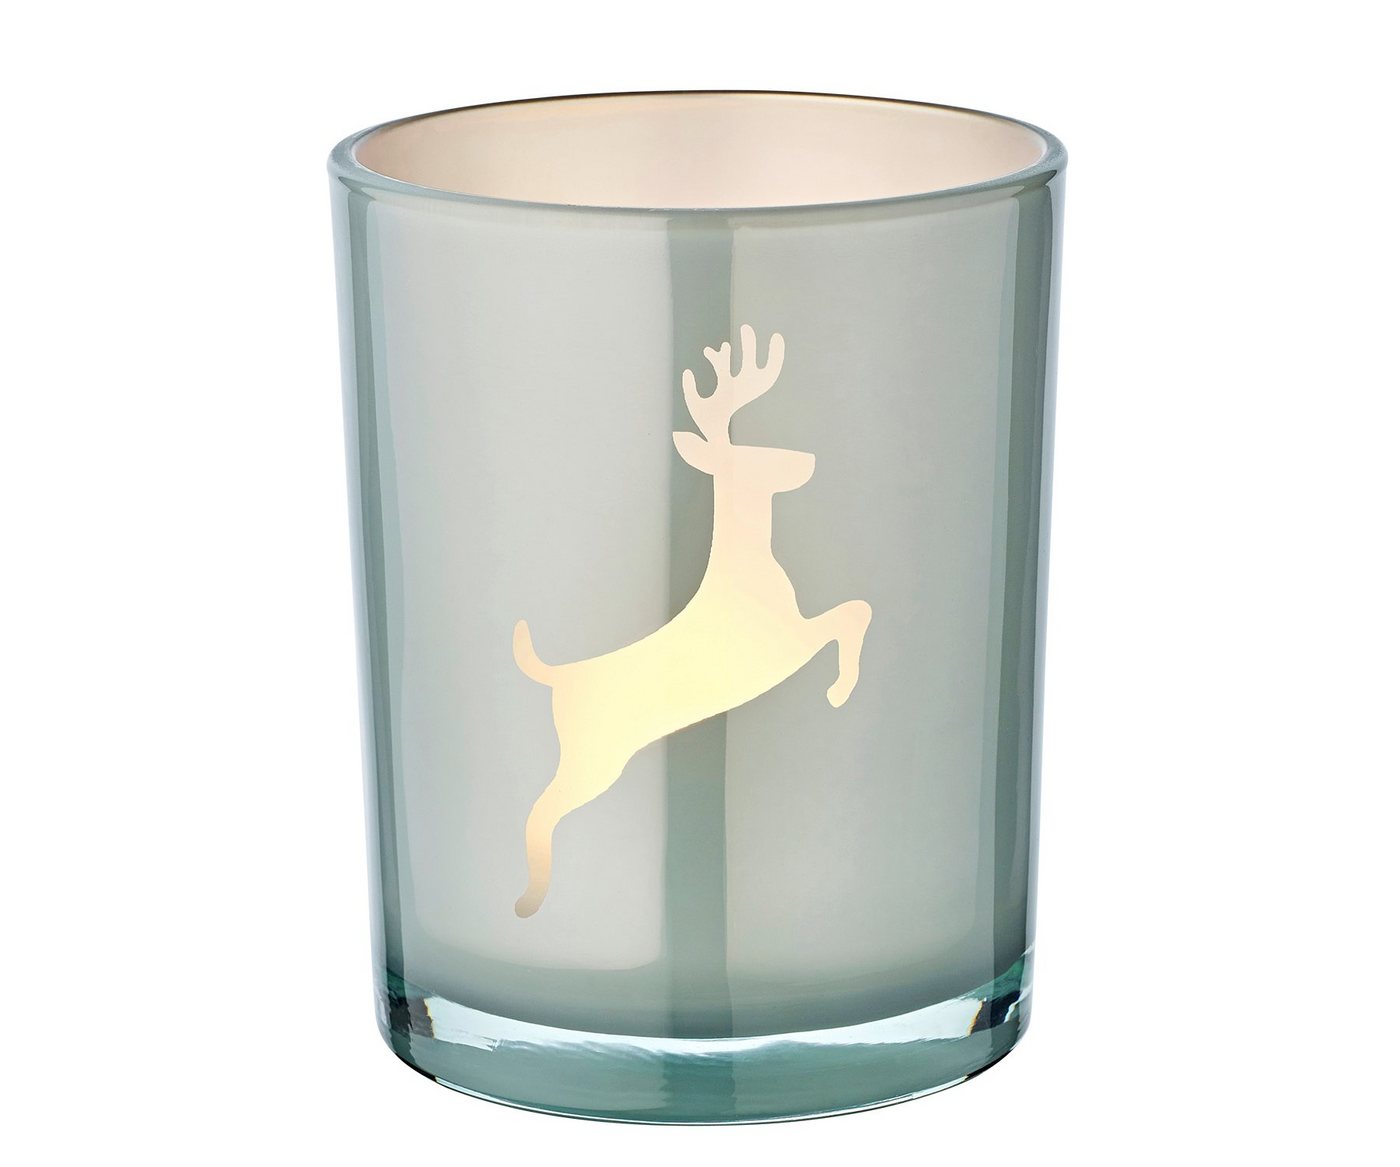 EDZARD Windlicht Loki right, Windlicht, Kerzenglas mit Rentier-Motiv in Grau-Weiß, Teelichtglas für Teelichter, Höhe 13 cm, Ø 10 cm von EDZARD